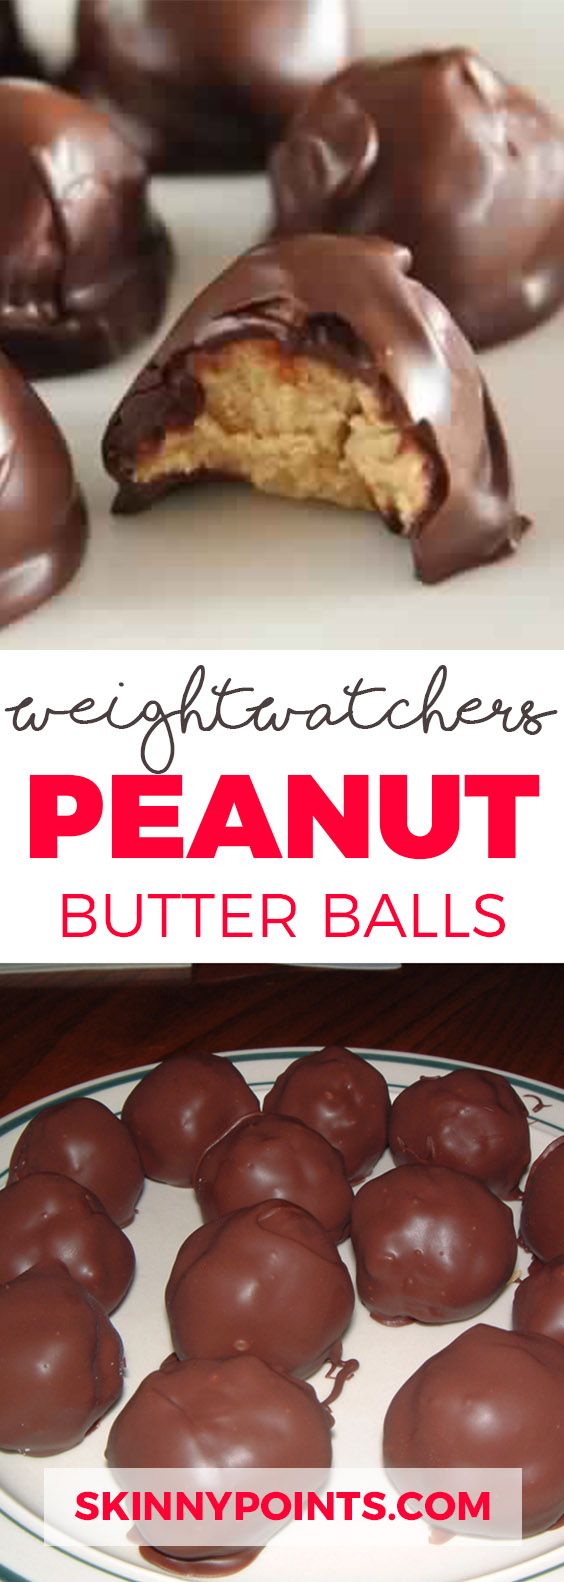 Peanut butter balls